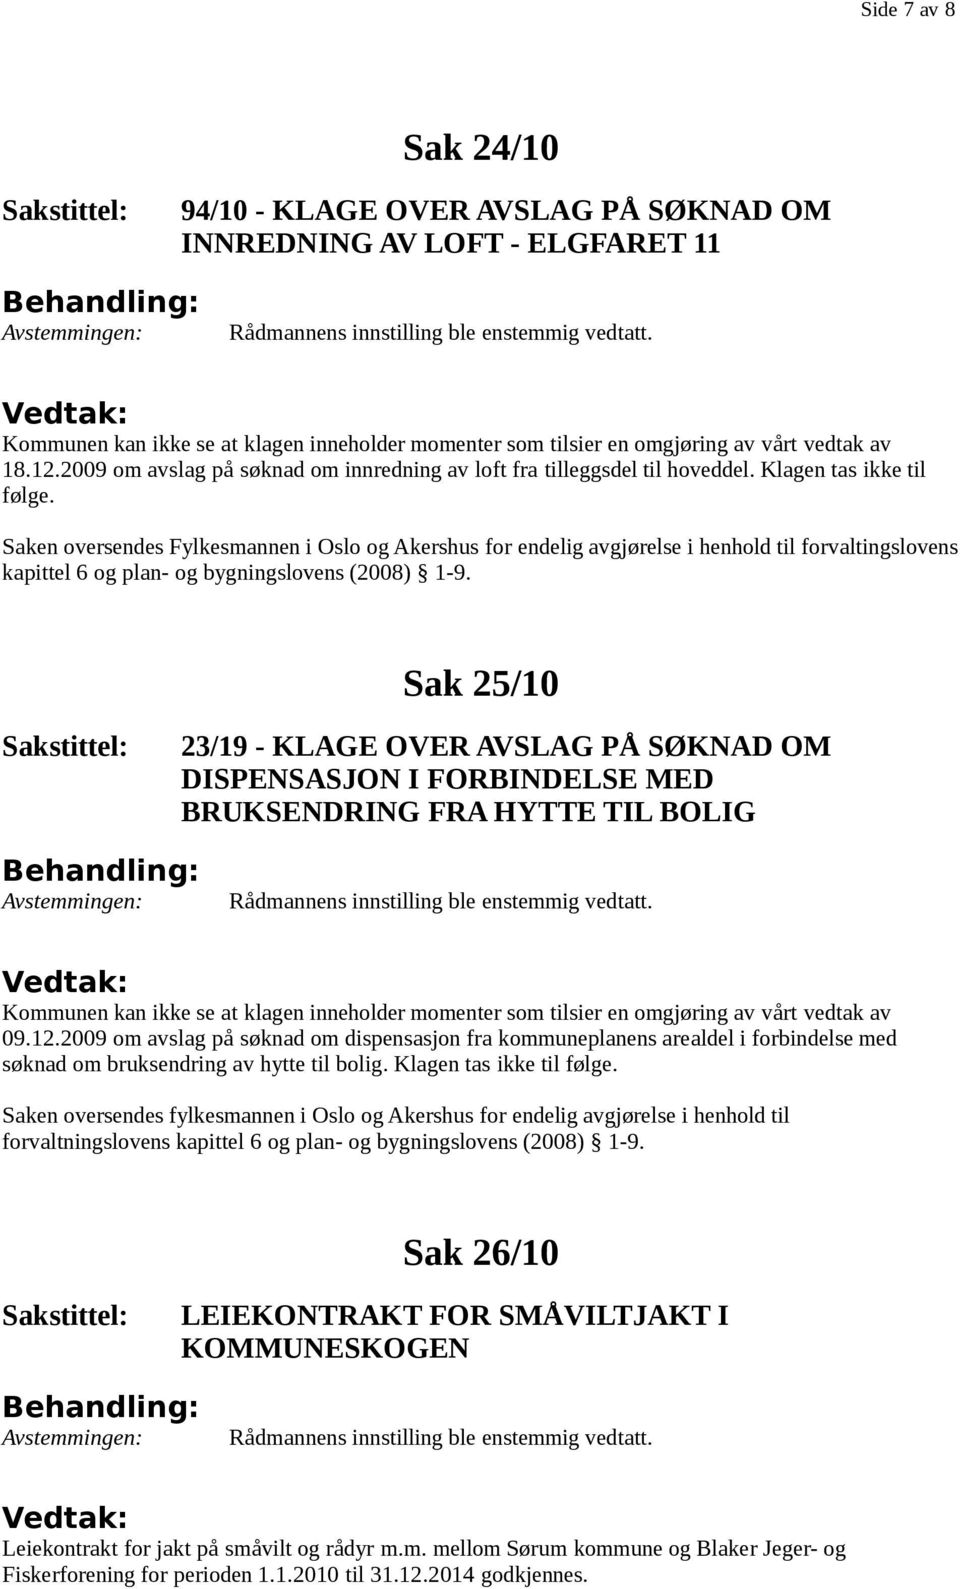 Saken oversendes Fylkesmannen i Oslo og Akershus for endelig avgjørelse i henhold til forvaltingslovens kapittel 6 og plan- og bygningslovens (2008) 1-9.